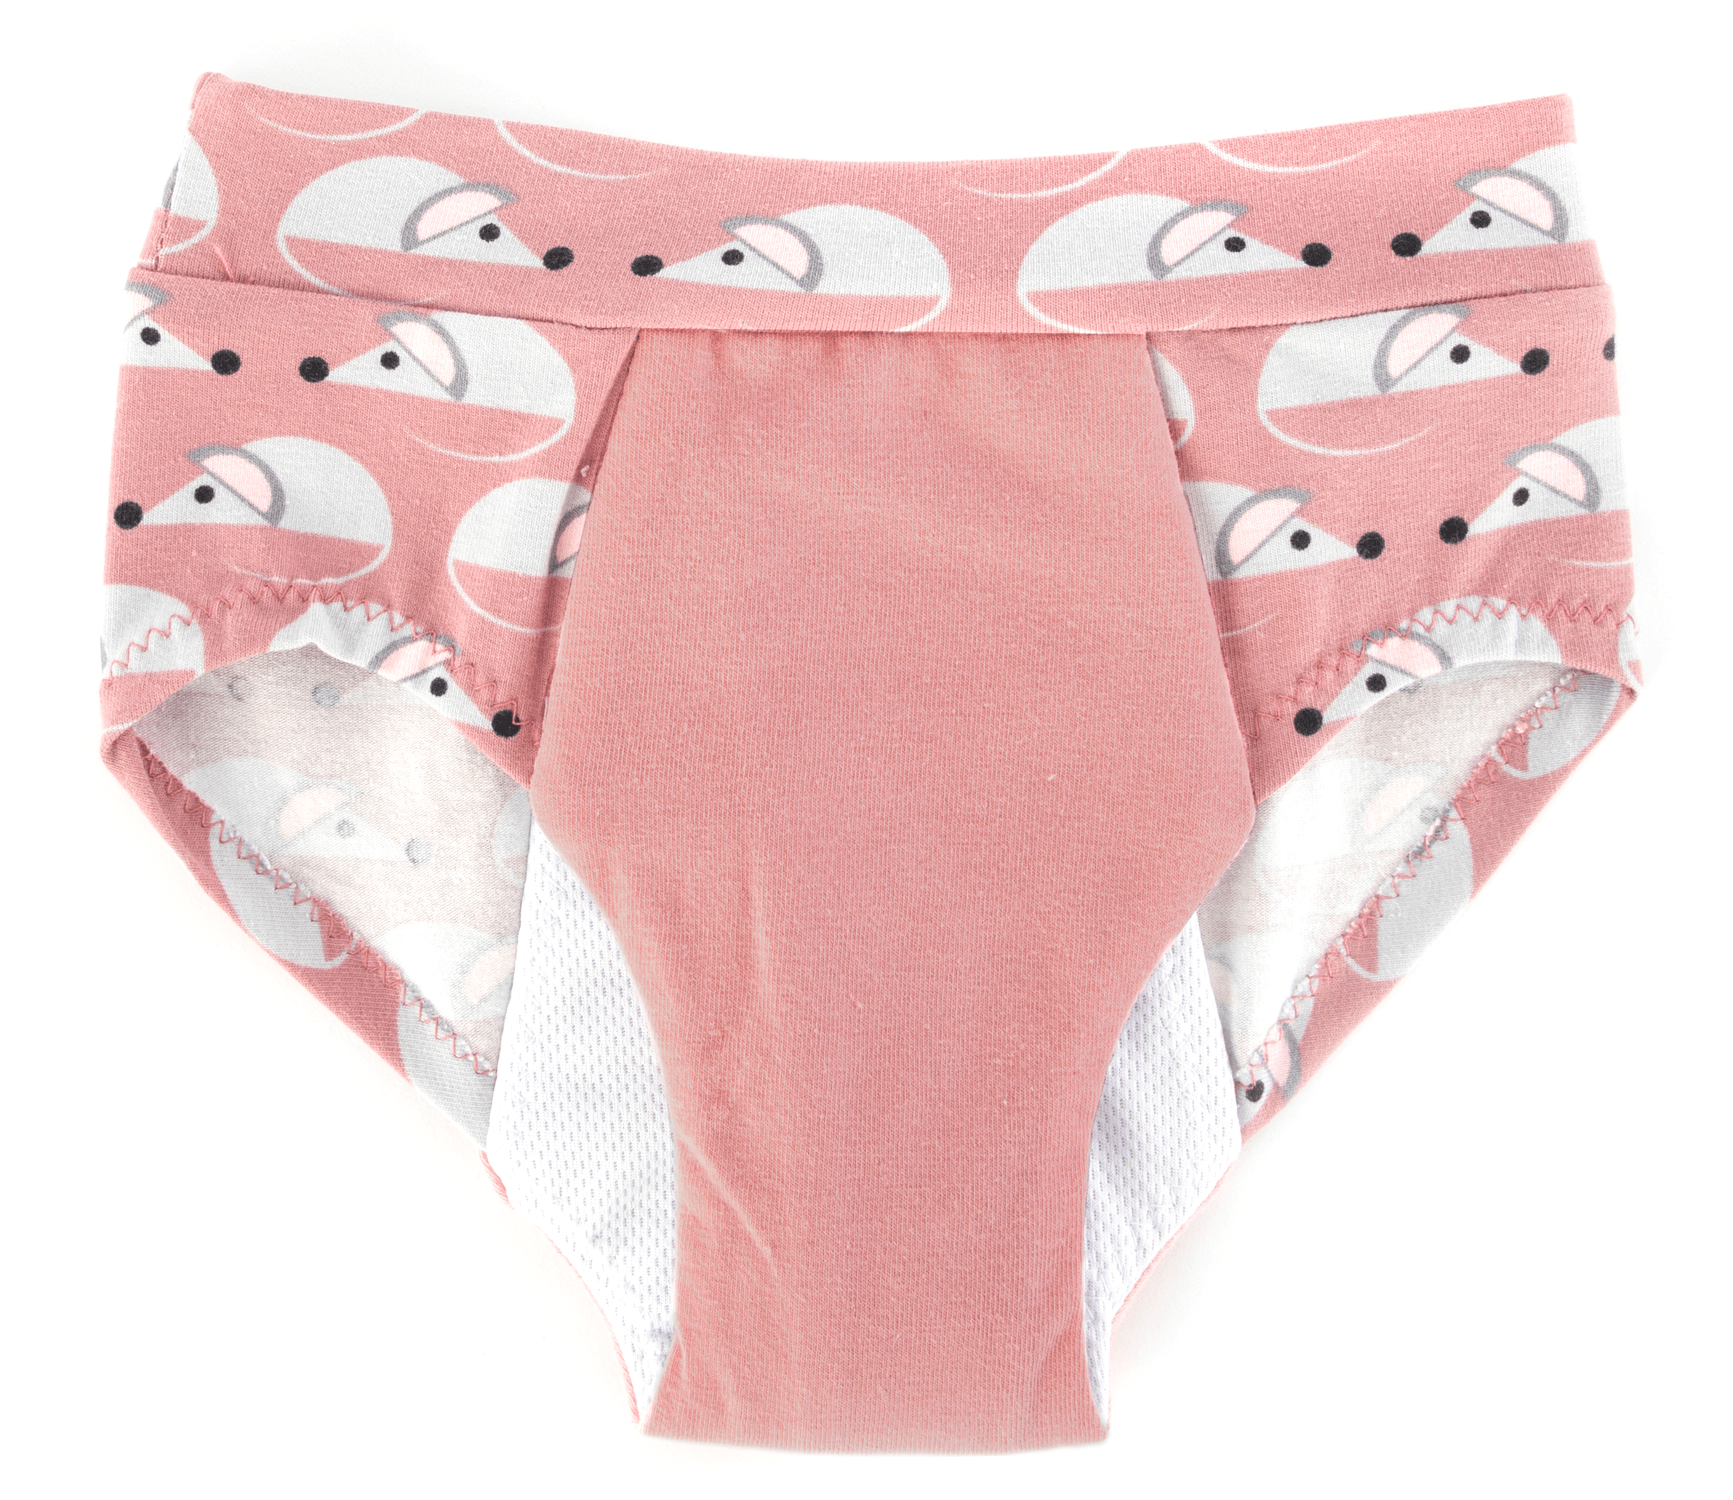 4344 // SARAH Period underwear and reusable pads - Jalie